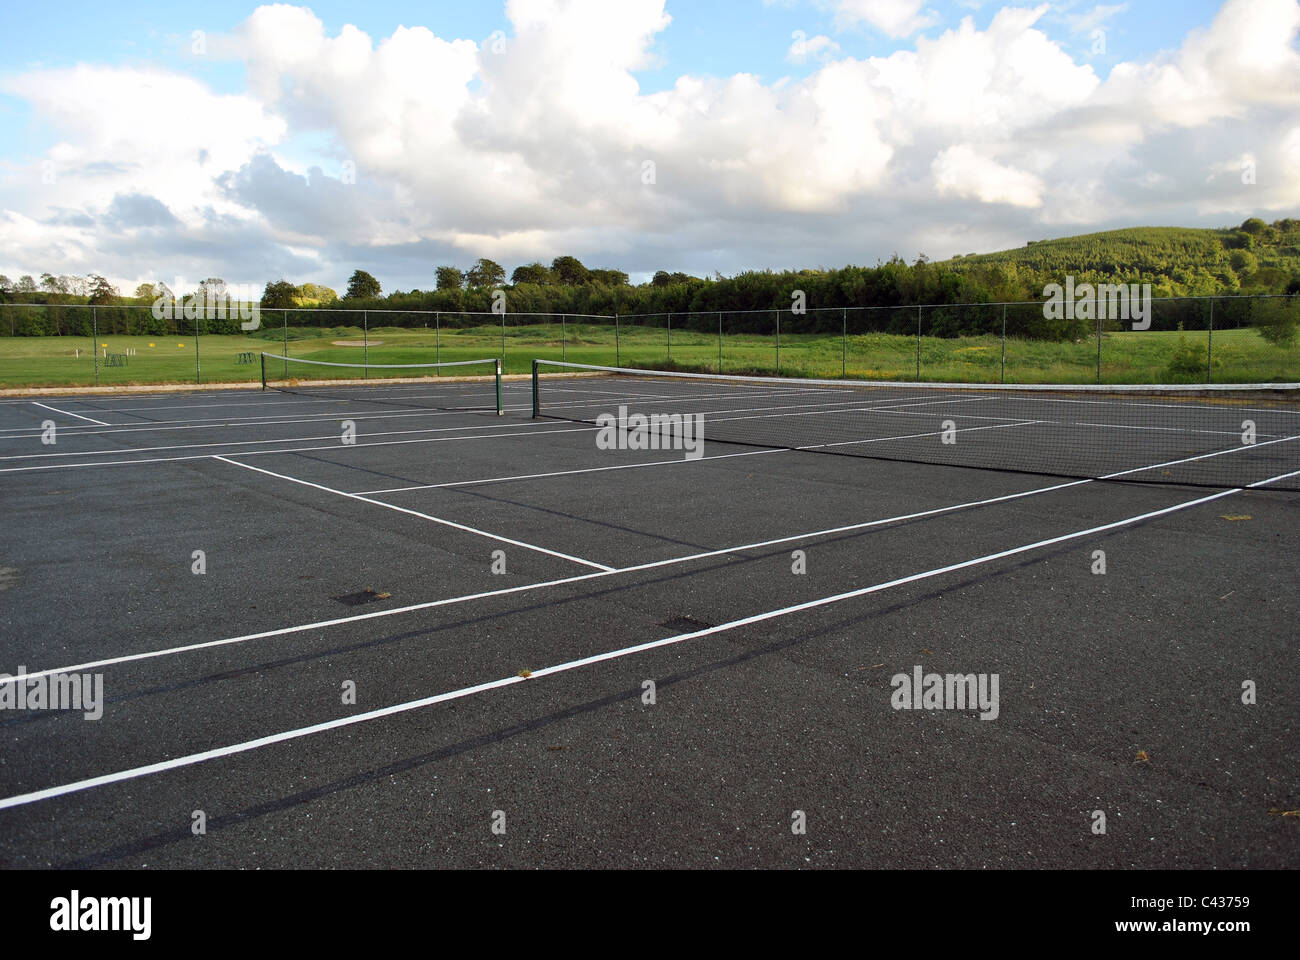 court de tennis Banque D'Images